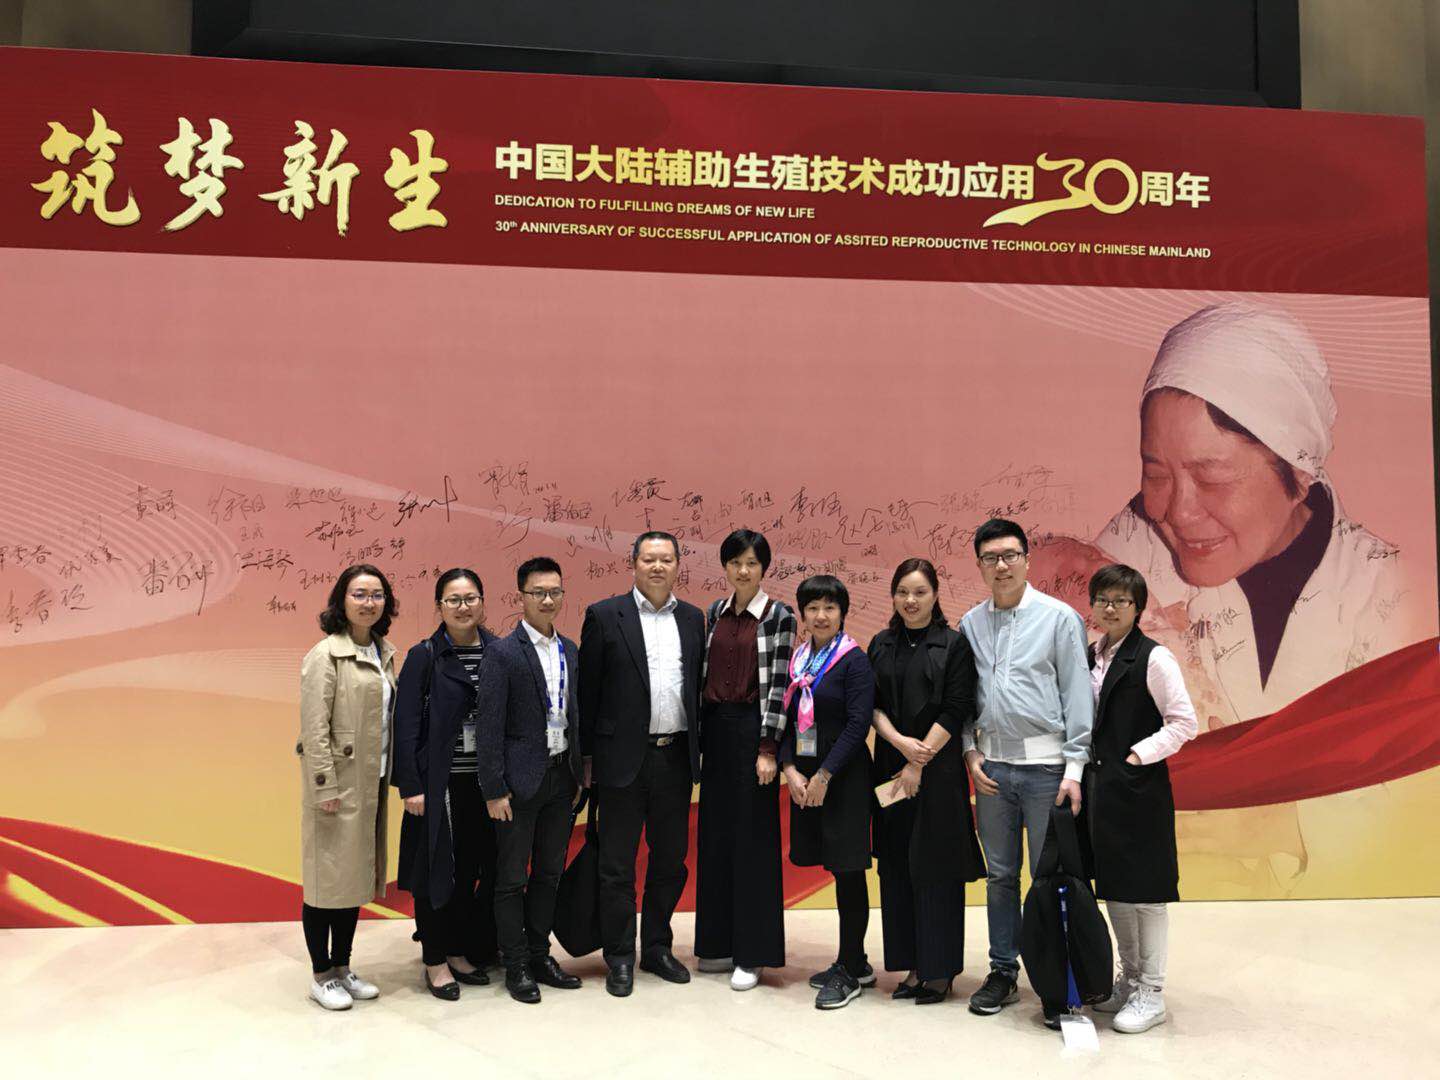 我院众多科室骨干受邀出席《中国大陆辅助生殖技术成功应用30年庆典&生殖健康学术研讨会》